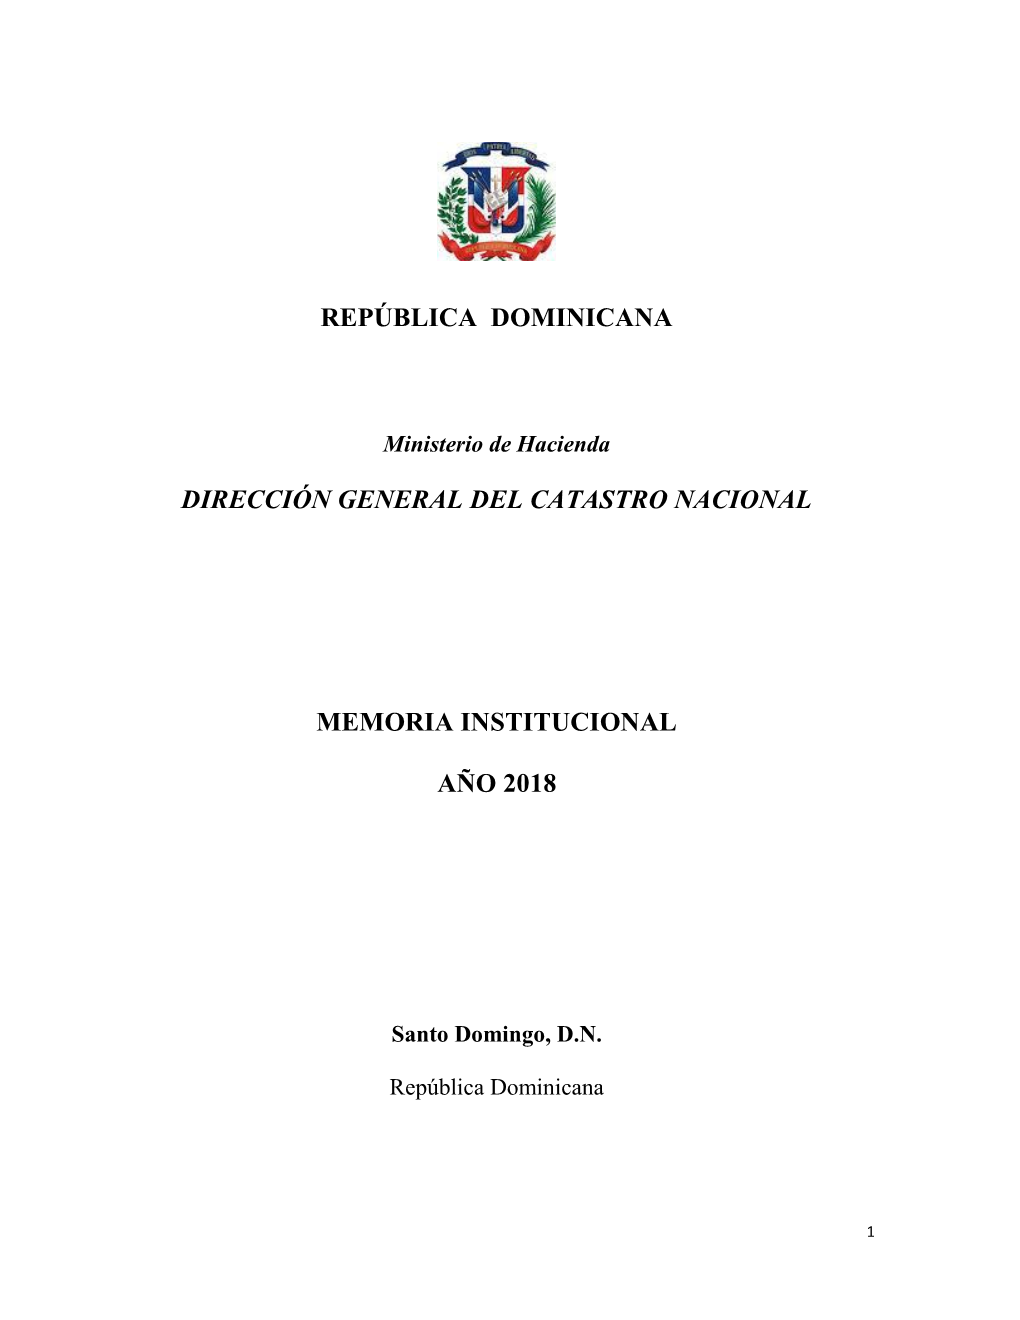 República Dominicana Dirección General Del